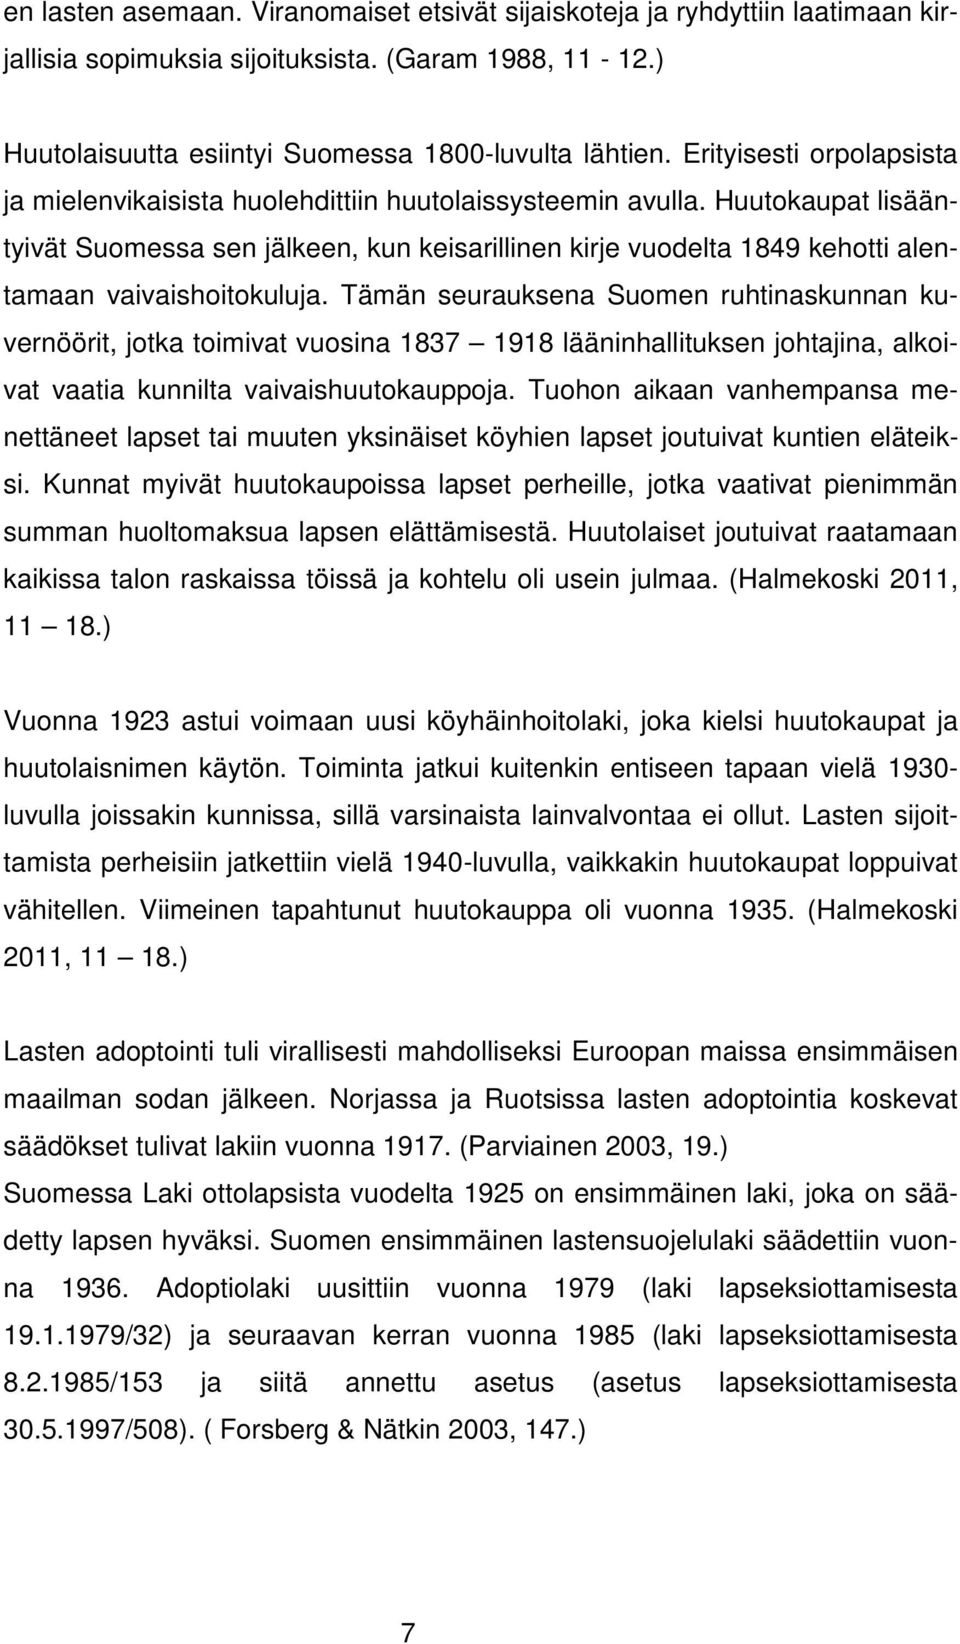 Huutokaupat lisääntyivät Suomessa sen jälkeen, kun keisarillinen kirje vuodelta 1849 kehotti alentamaan vaivaishoitokuluja.